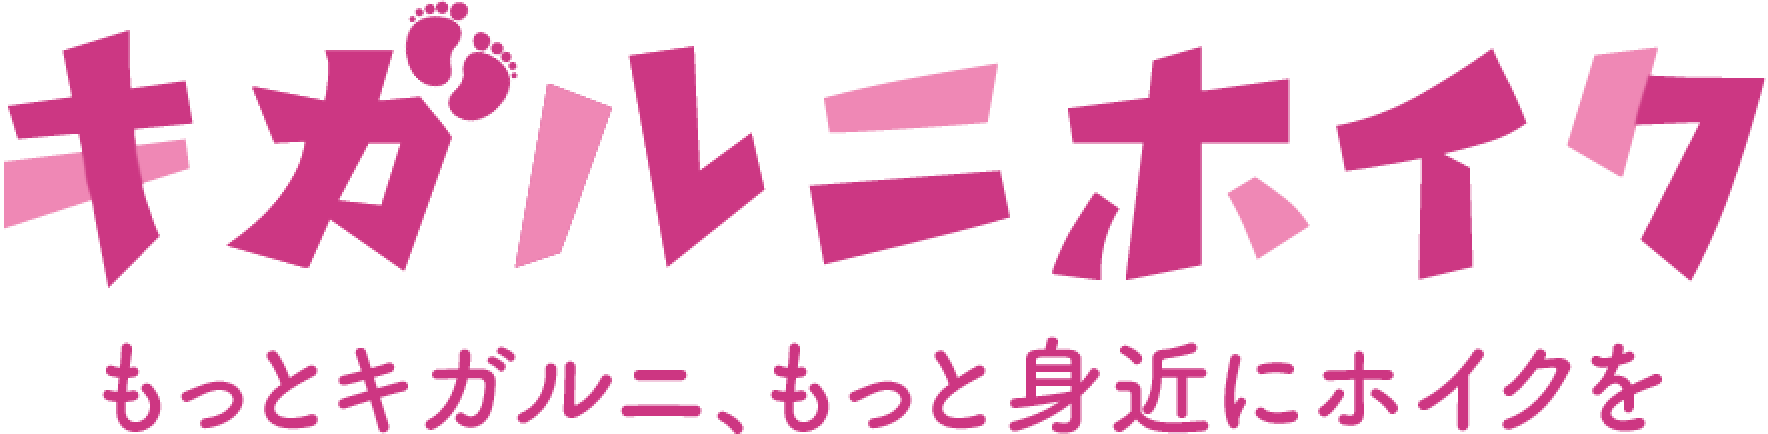 キガルニホイクのロゴ